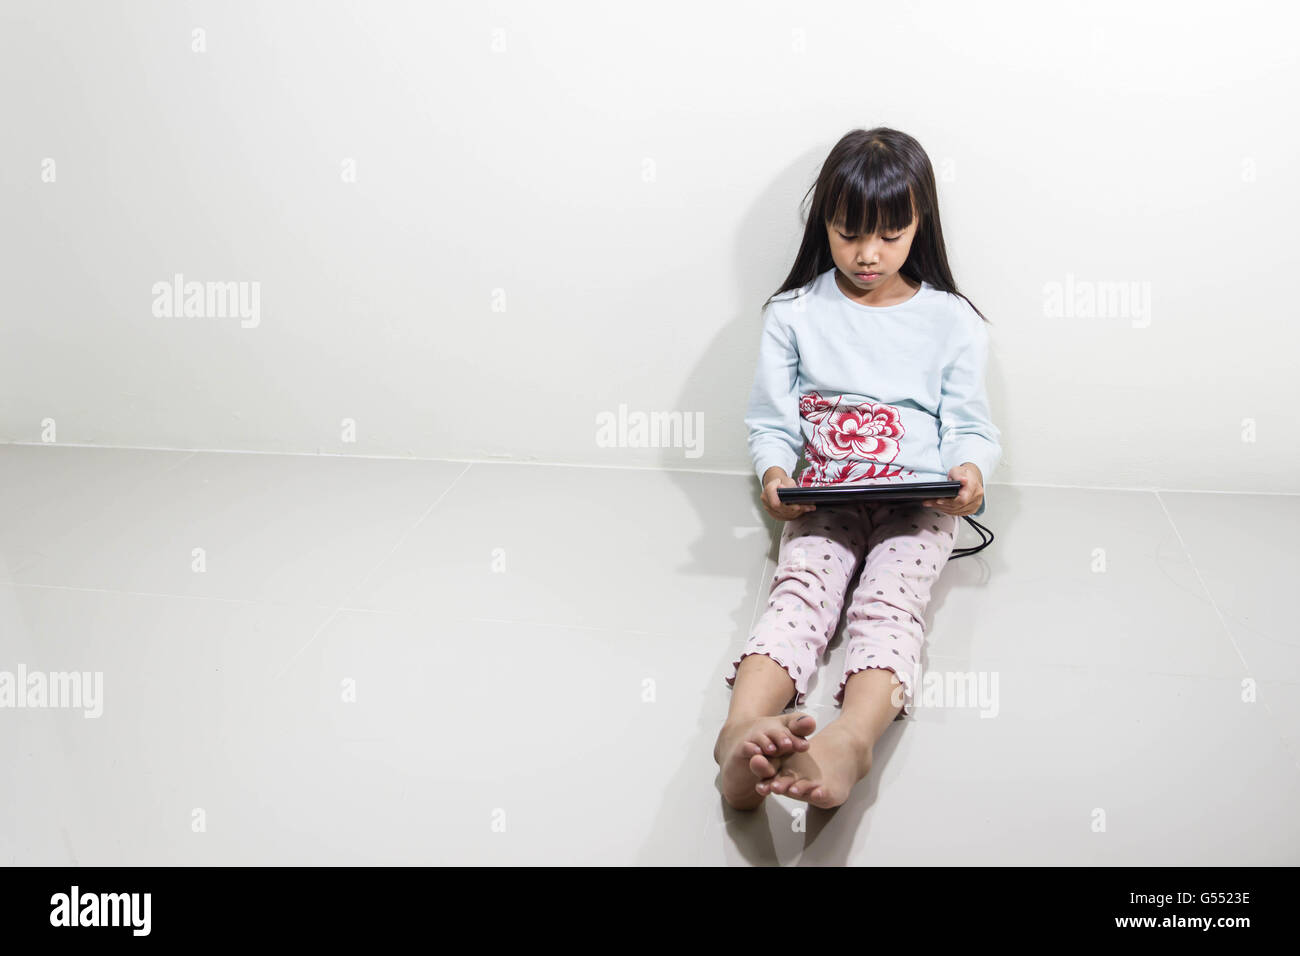 Kinder mit Tablet-PC sitzen auf dem Boden - Technologie und Kinder Konzept Stockfoto